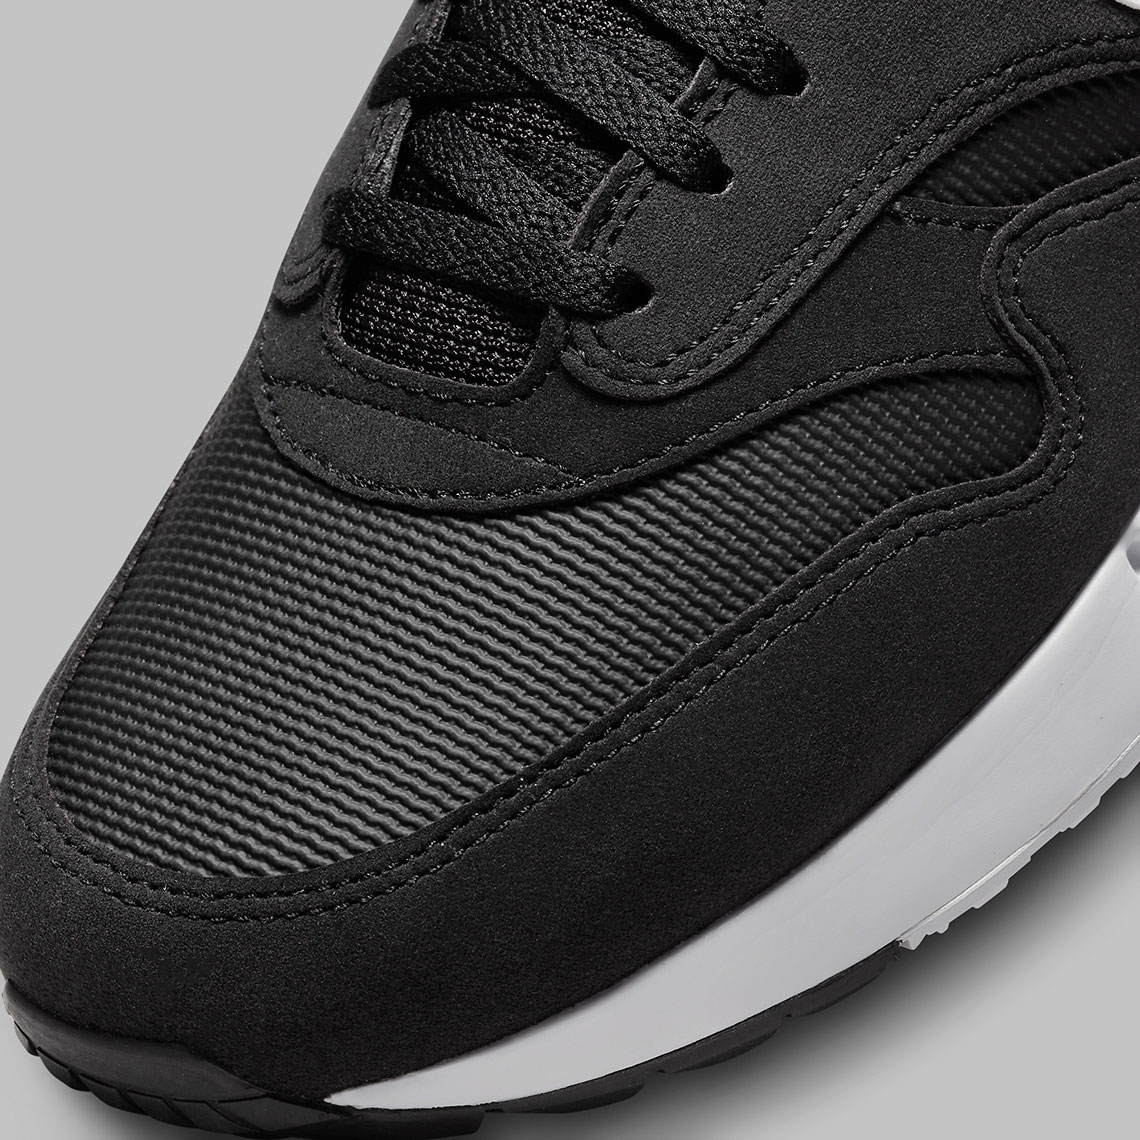 Nike Air Max 1 Golf Black White Dv1403 010 3